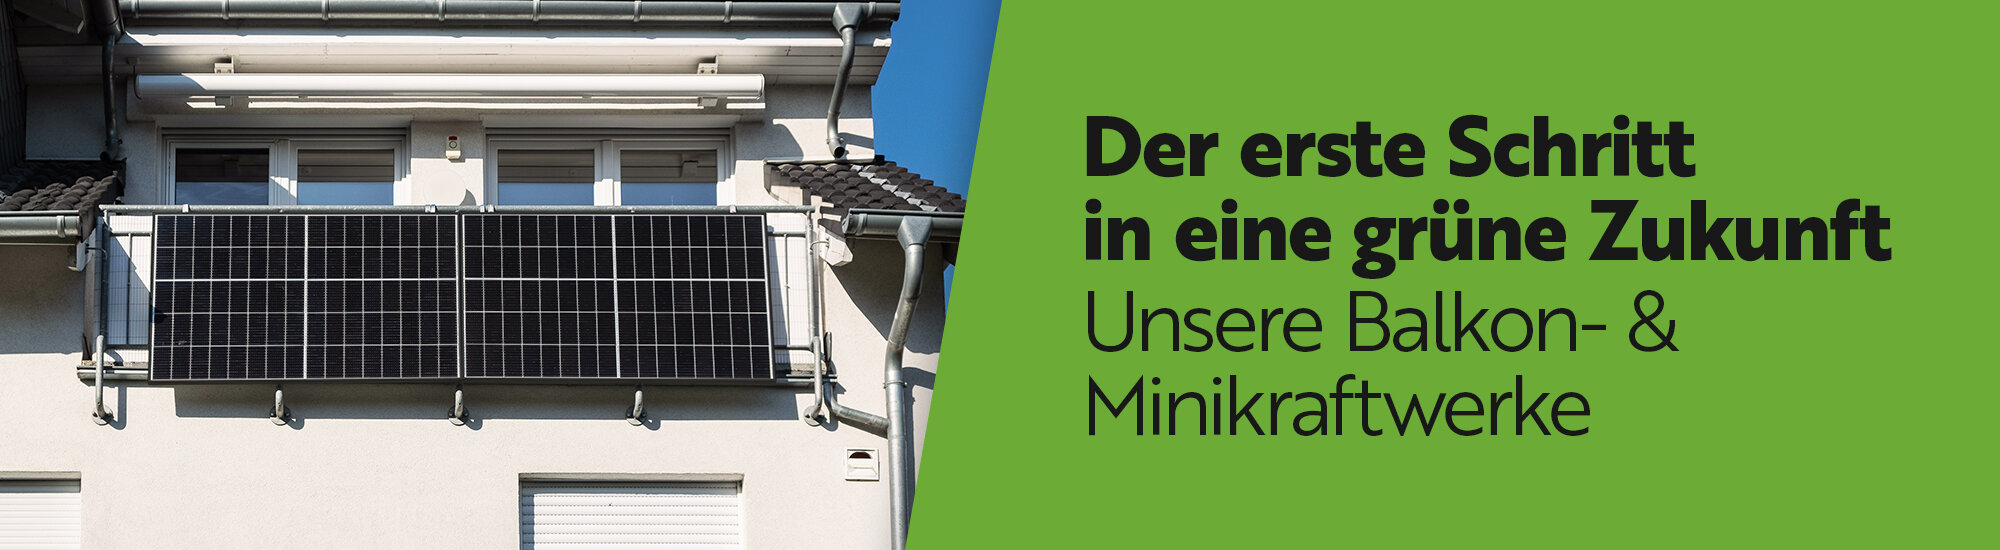 Balkon- und Minikraftwerke sind die Beste Lösung zum Einstieg in grüne Energie